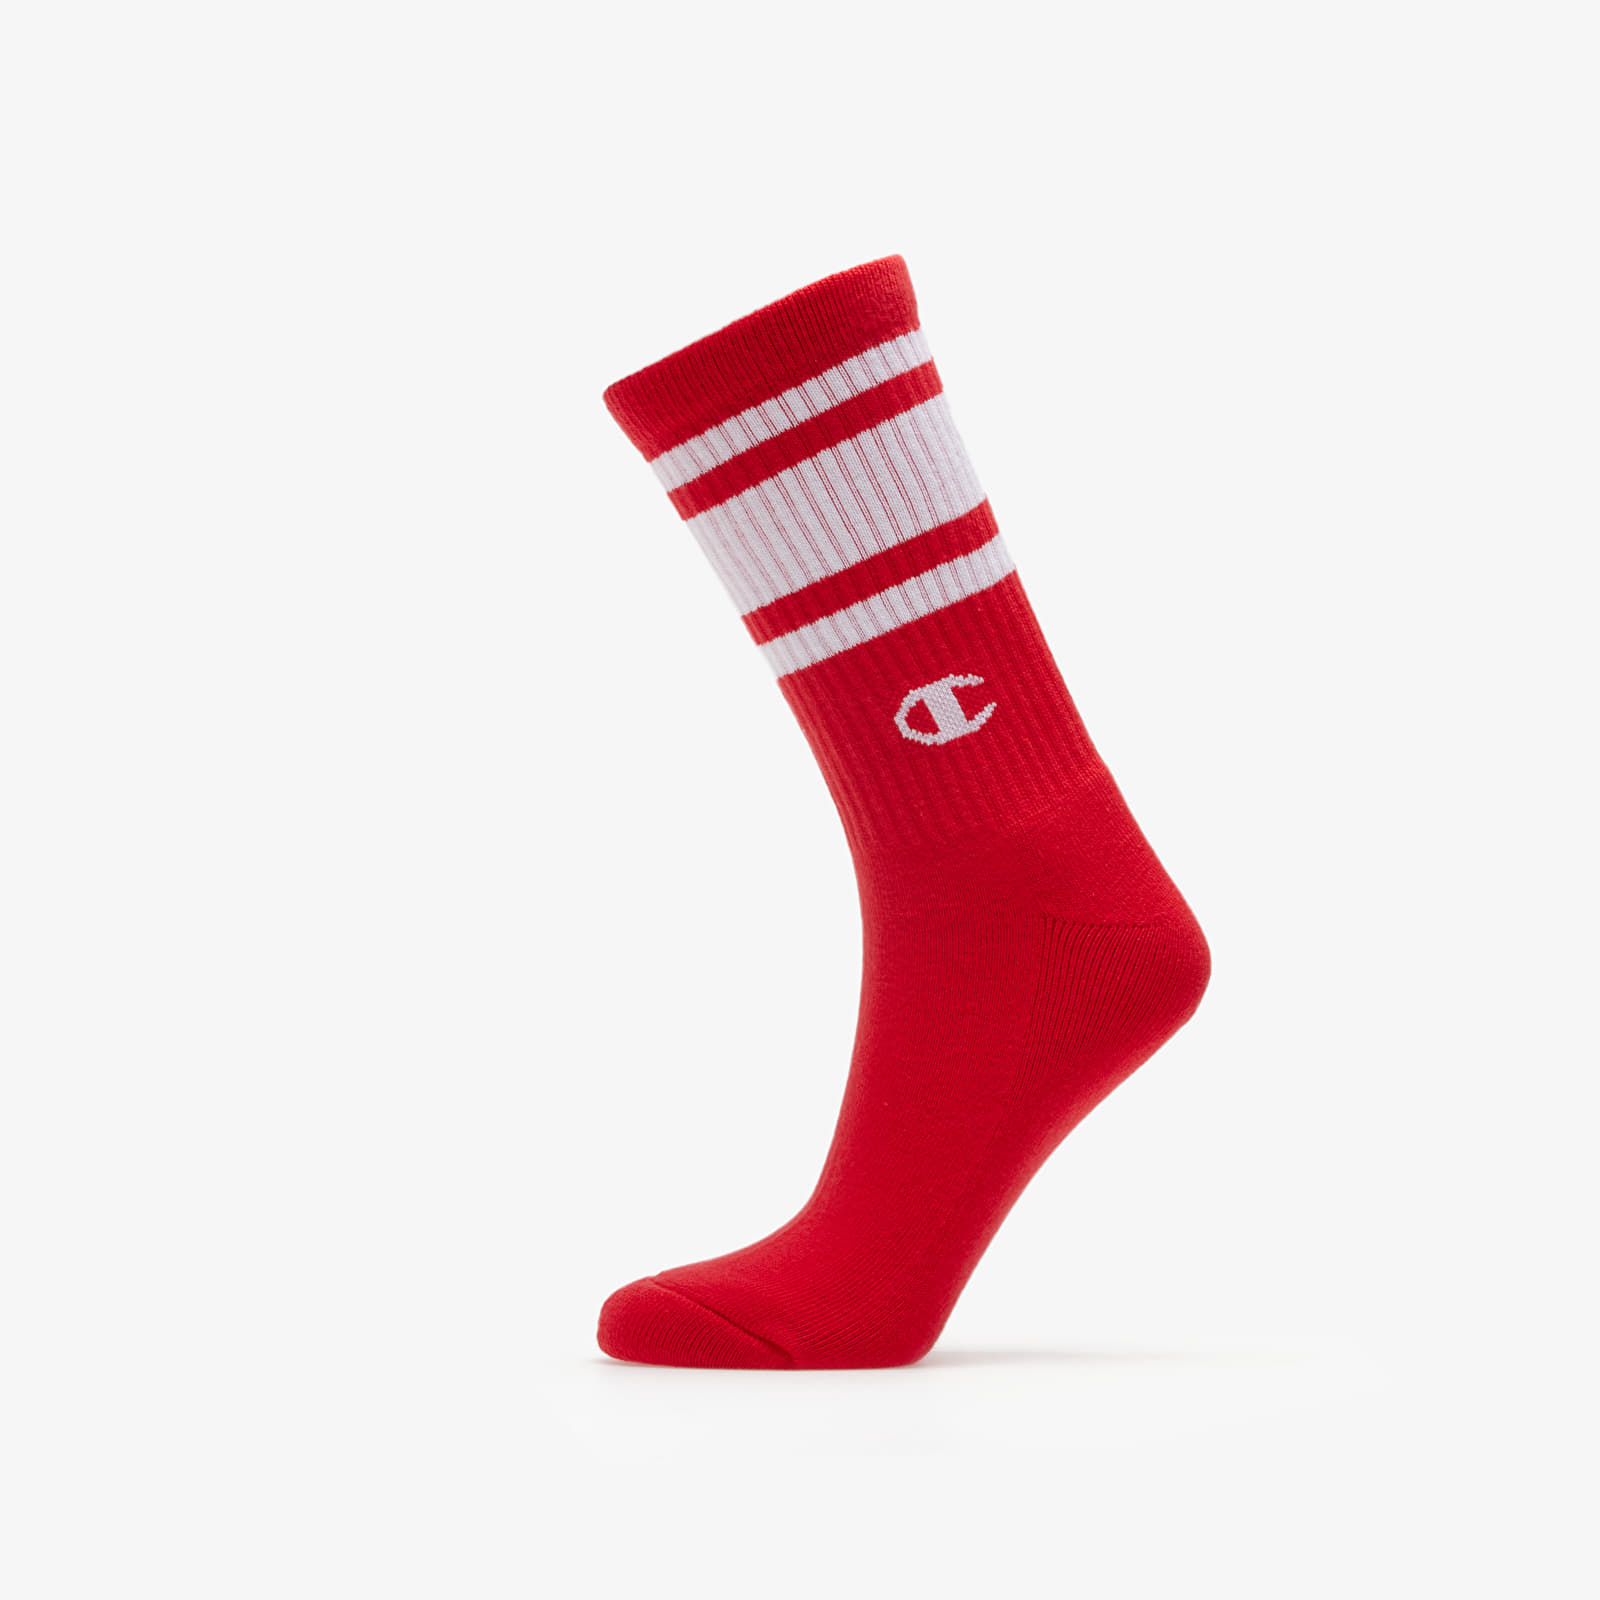 Everyday socks Champion 2Pack Socks White/ Red